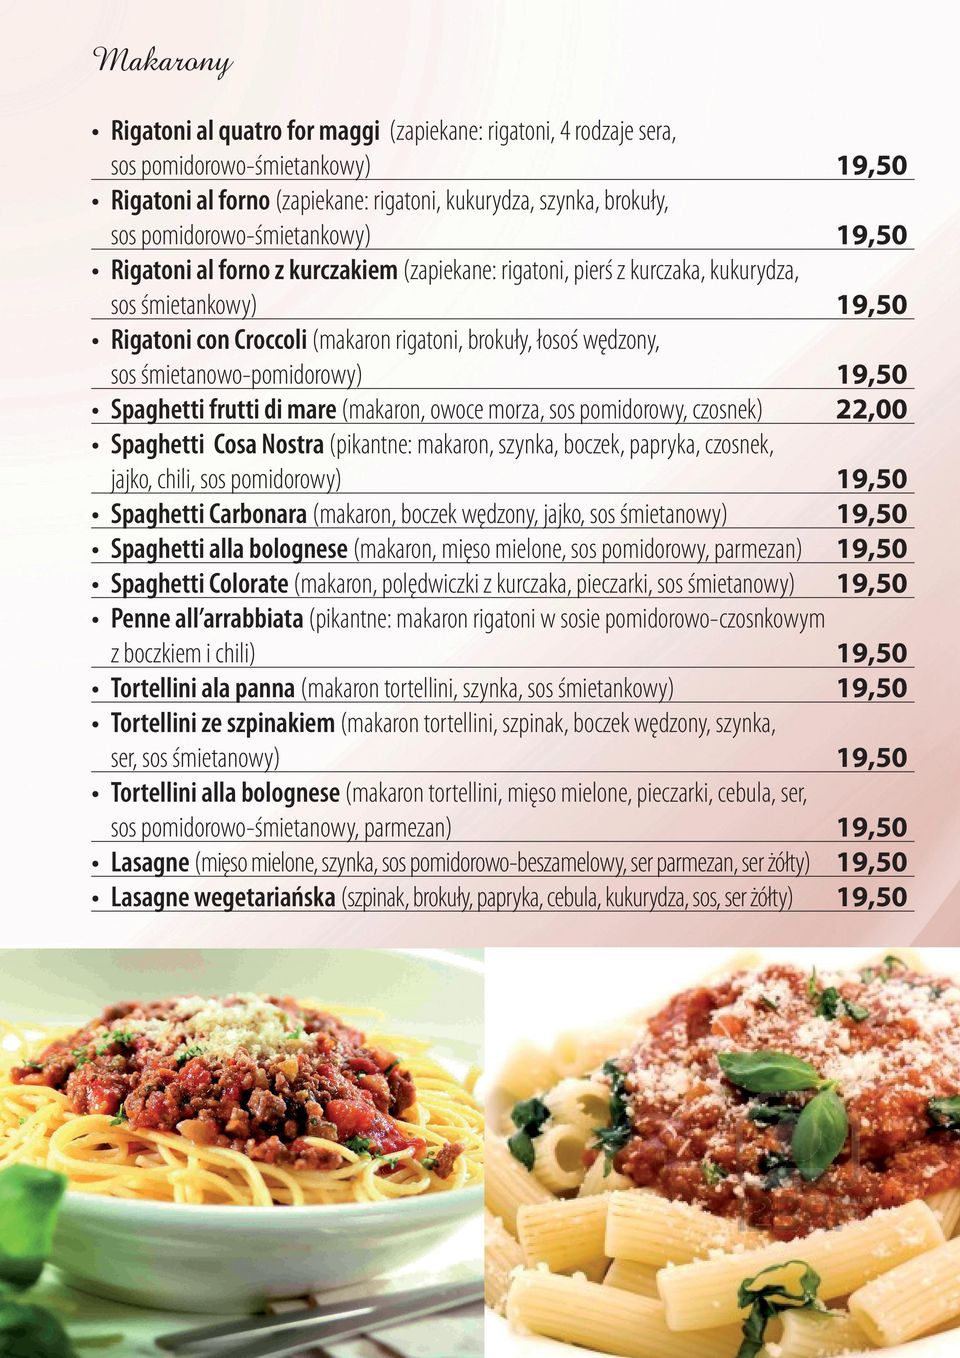 Spaghetti frutti di mare (makaron, owoce morza, sos pomidorowy, czosnek) Spaghetti Cosa Nostra (pikantne: makaron, szynka, boczek, papryka, czosnek, jajko, chili, sos pomidorowy) Spaghetti Carbonara